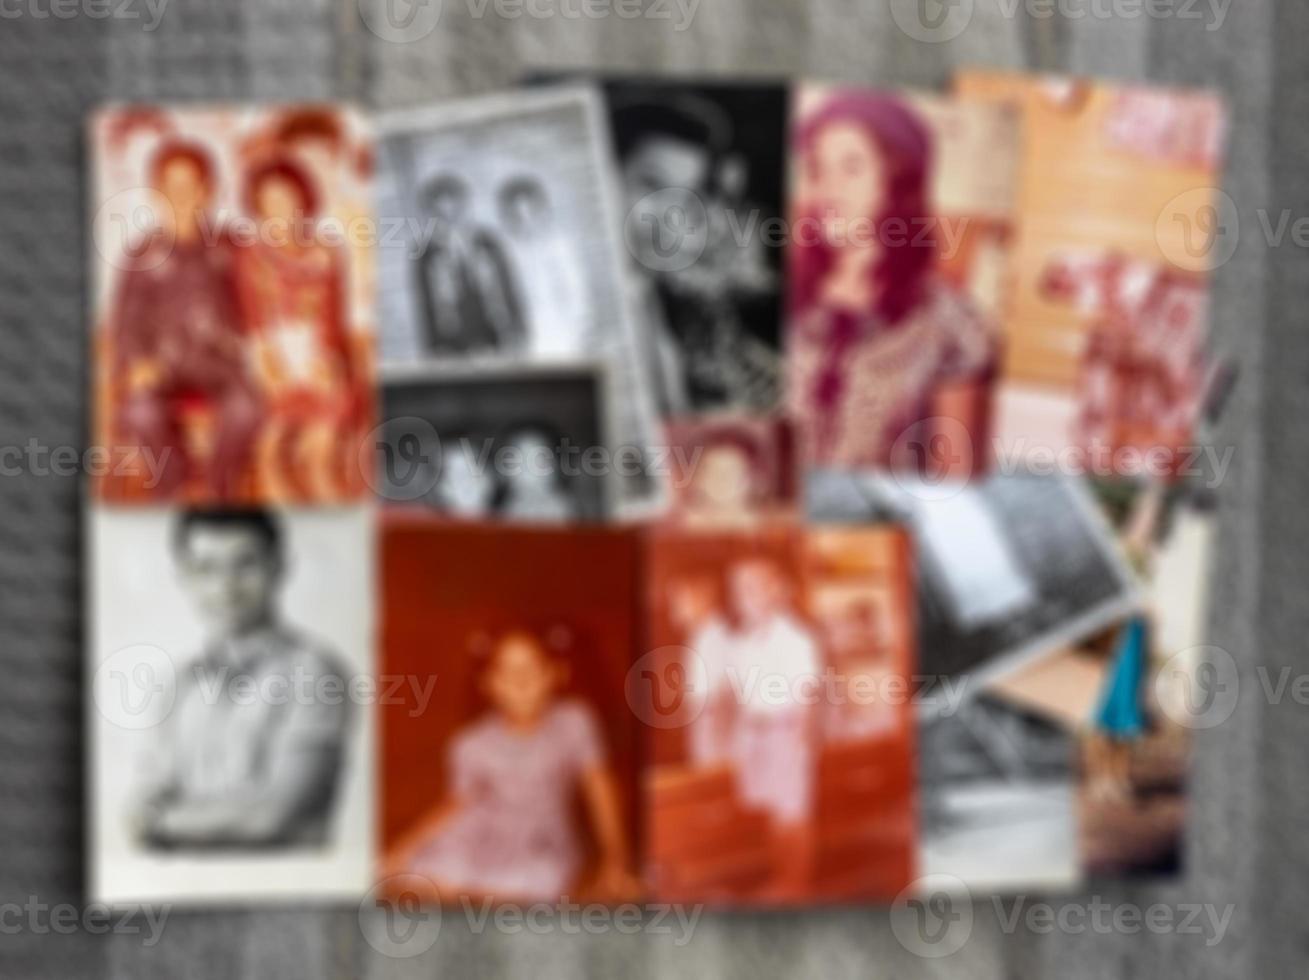 l'arrière-plan flou est flou sur de nombreuses vieilles photos de famille.